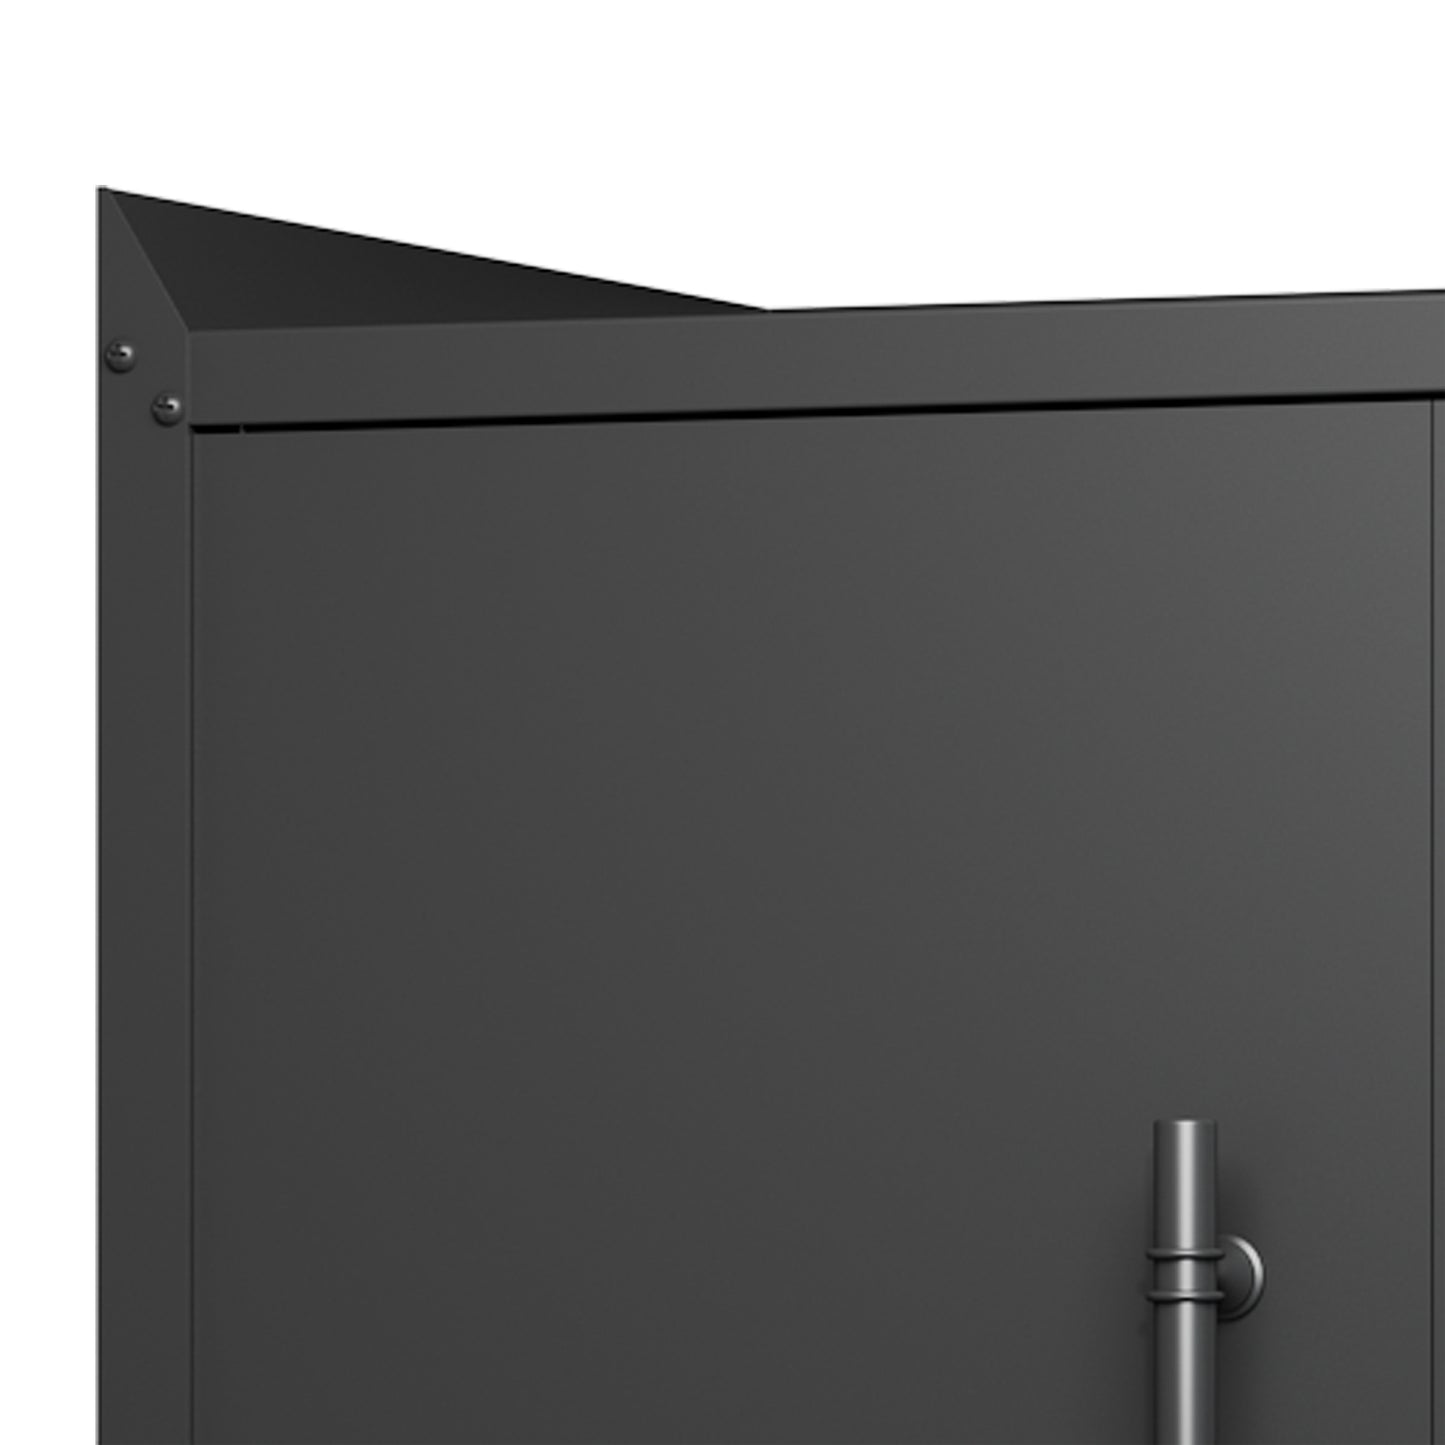 2 Door Lockable Tool Cabinets - Ukerr Home